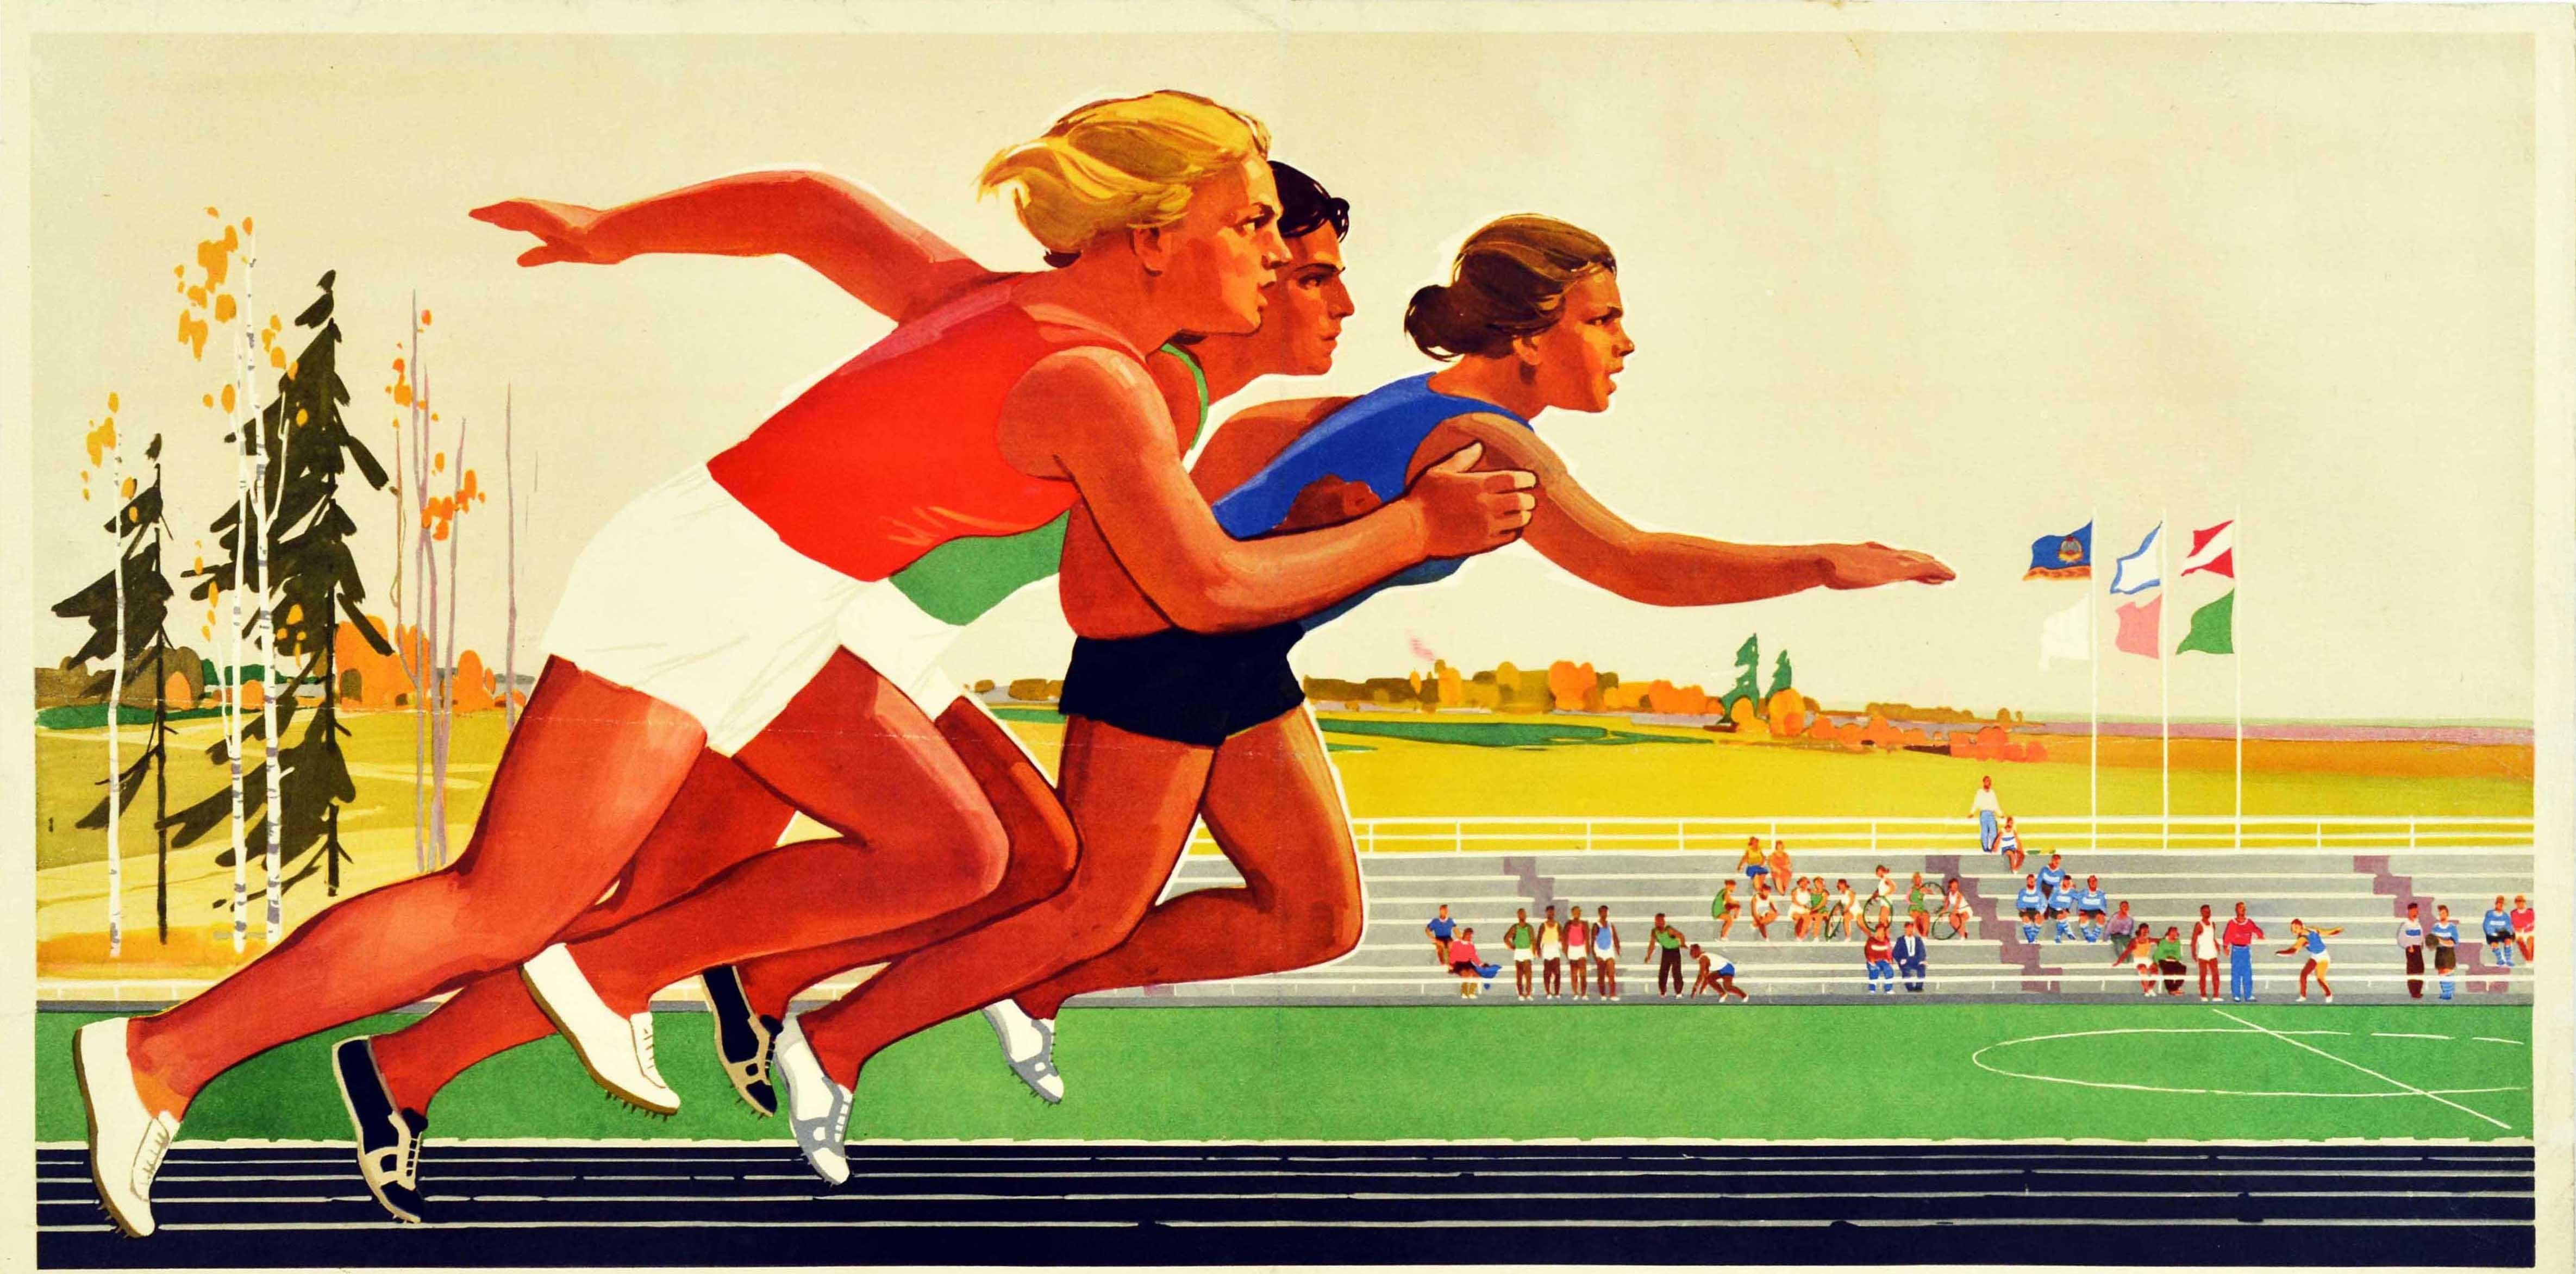 Original sowjetisches Sportplakat - Sport für die Massen! ????? ? ?????! - mit drei Athleten, die in einem Sprintrennen vorwärts rennen, mit anderen Teilnehmern an der Stadionbestuhlung und auf der Bahn im Hintergrund, mit Fahnen über dem Kopf und